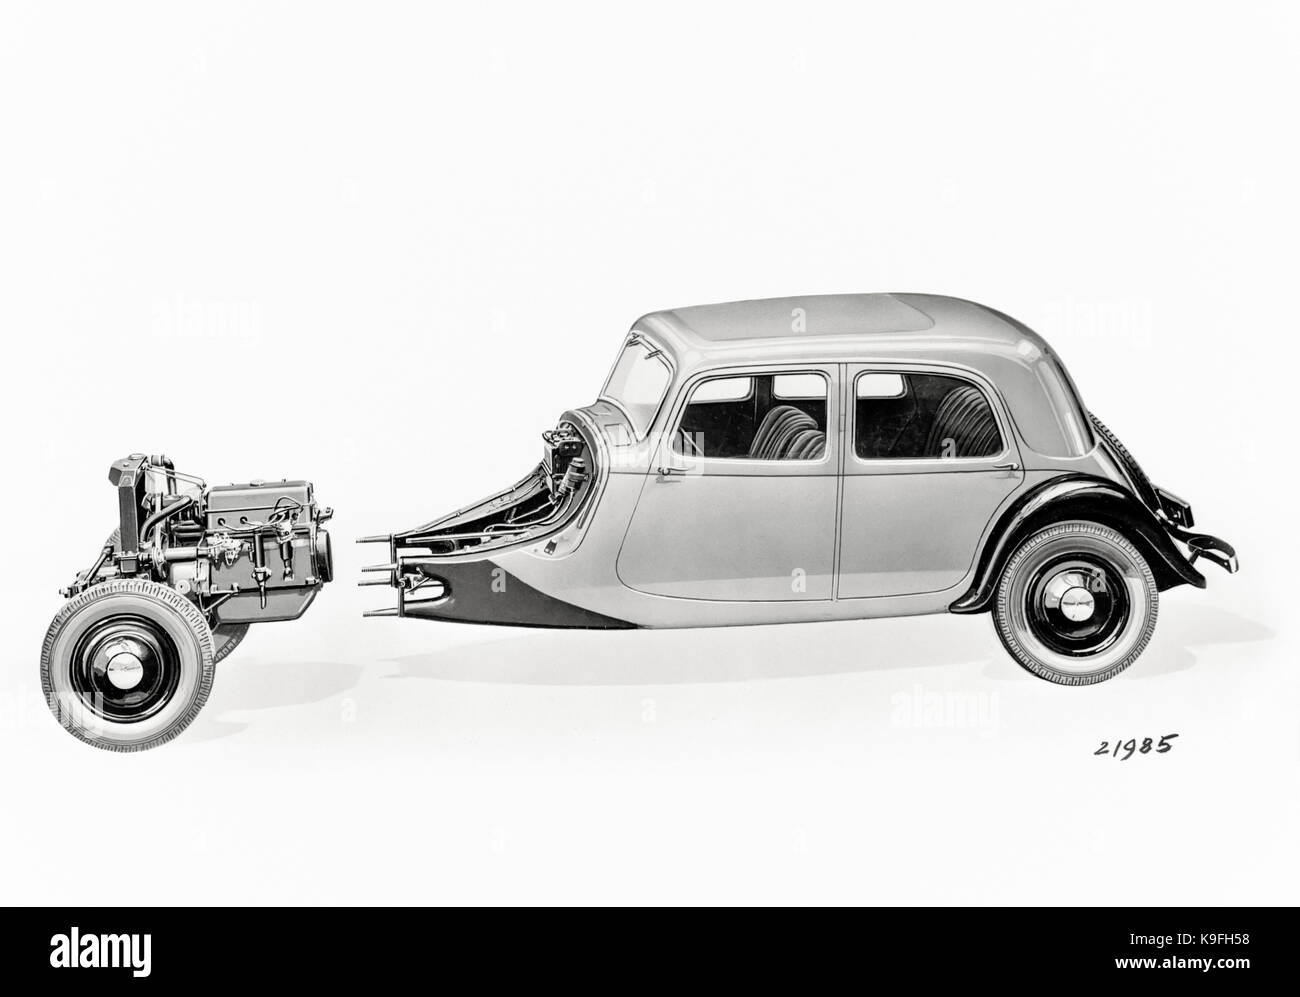 Citroën traction avant fabriqués entre 1934 et 1957. Illustration de ses principales fonctions innovantes, une unité corps avec le pont avant. Banque D'Images